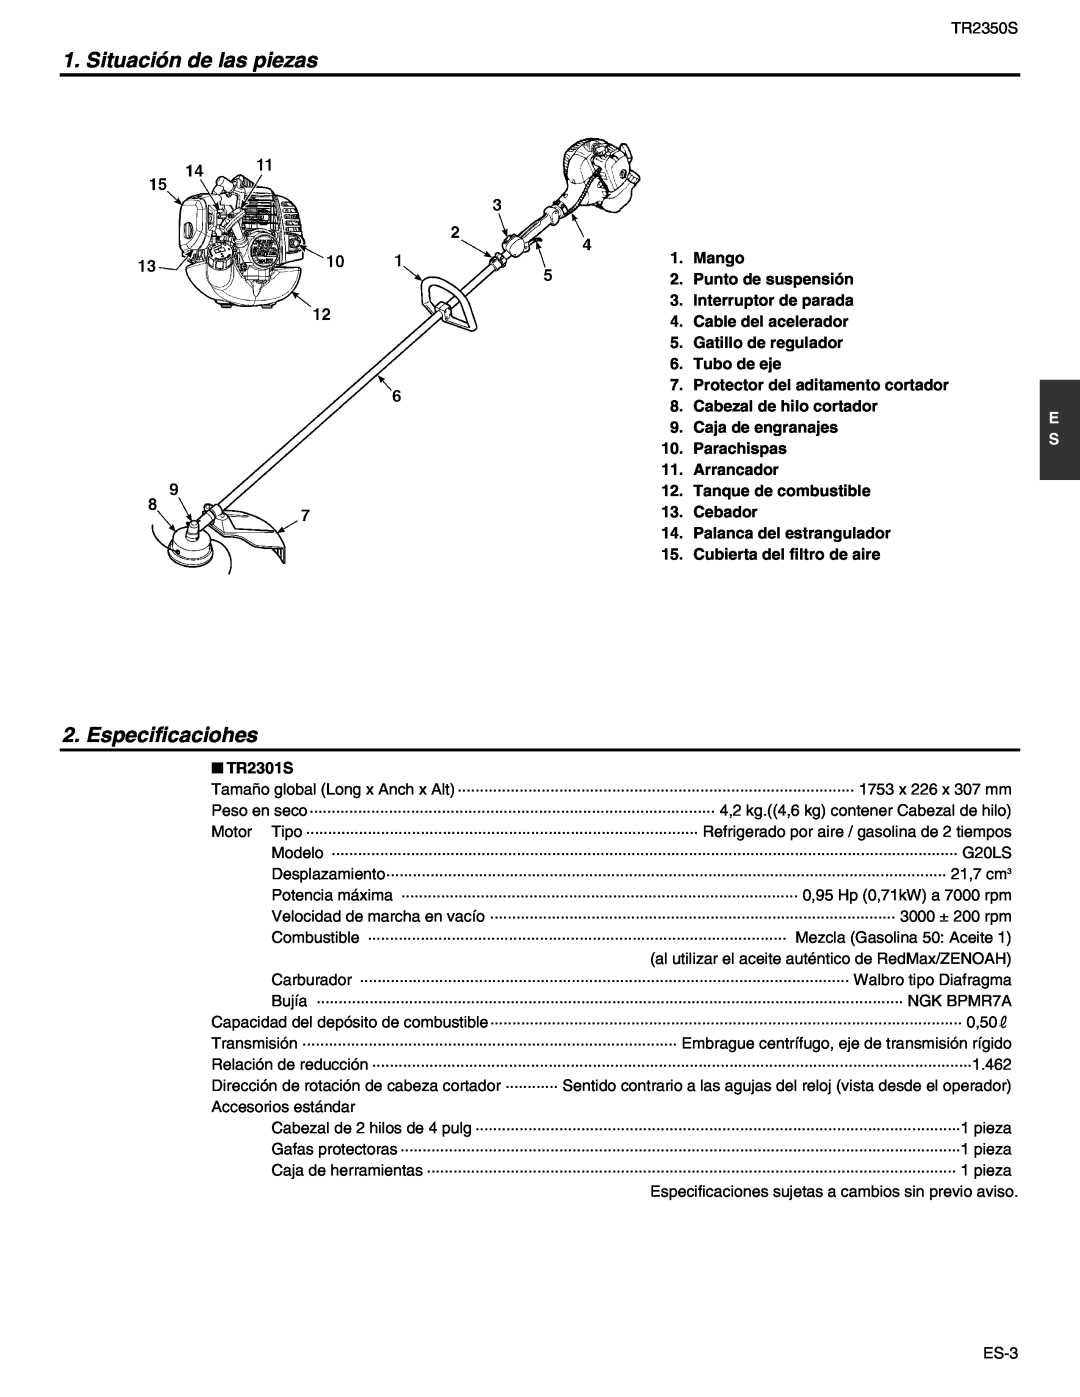 RedMax TR2350S manual Situación de las piezas, Especificaciohes 